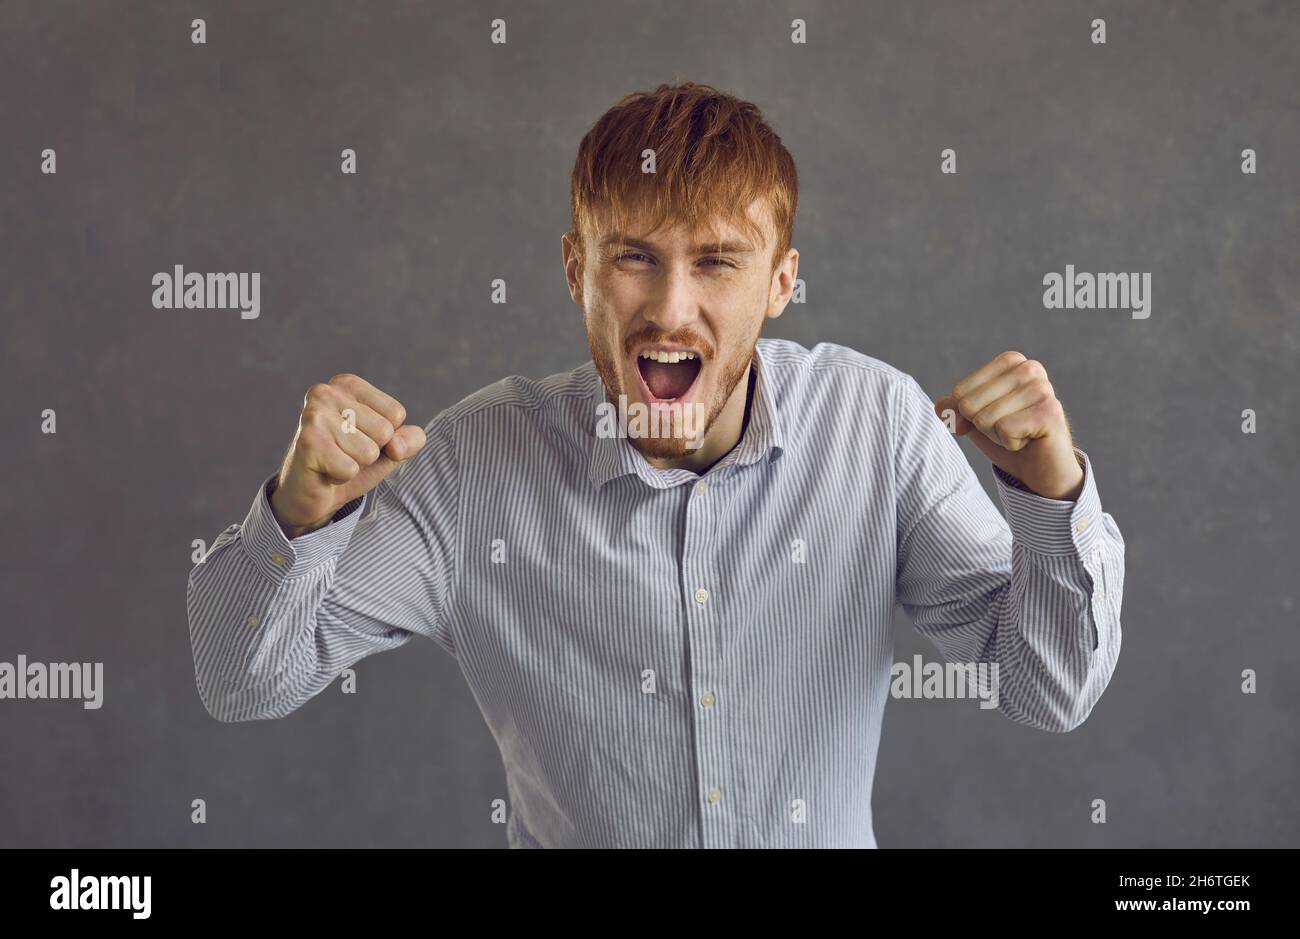 Schreiender wütender Mann, der streitende Studio-Kopfschuss-Porträt auf grauem Hintergrund tobt Stockfoto